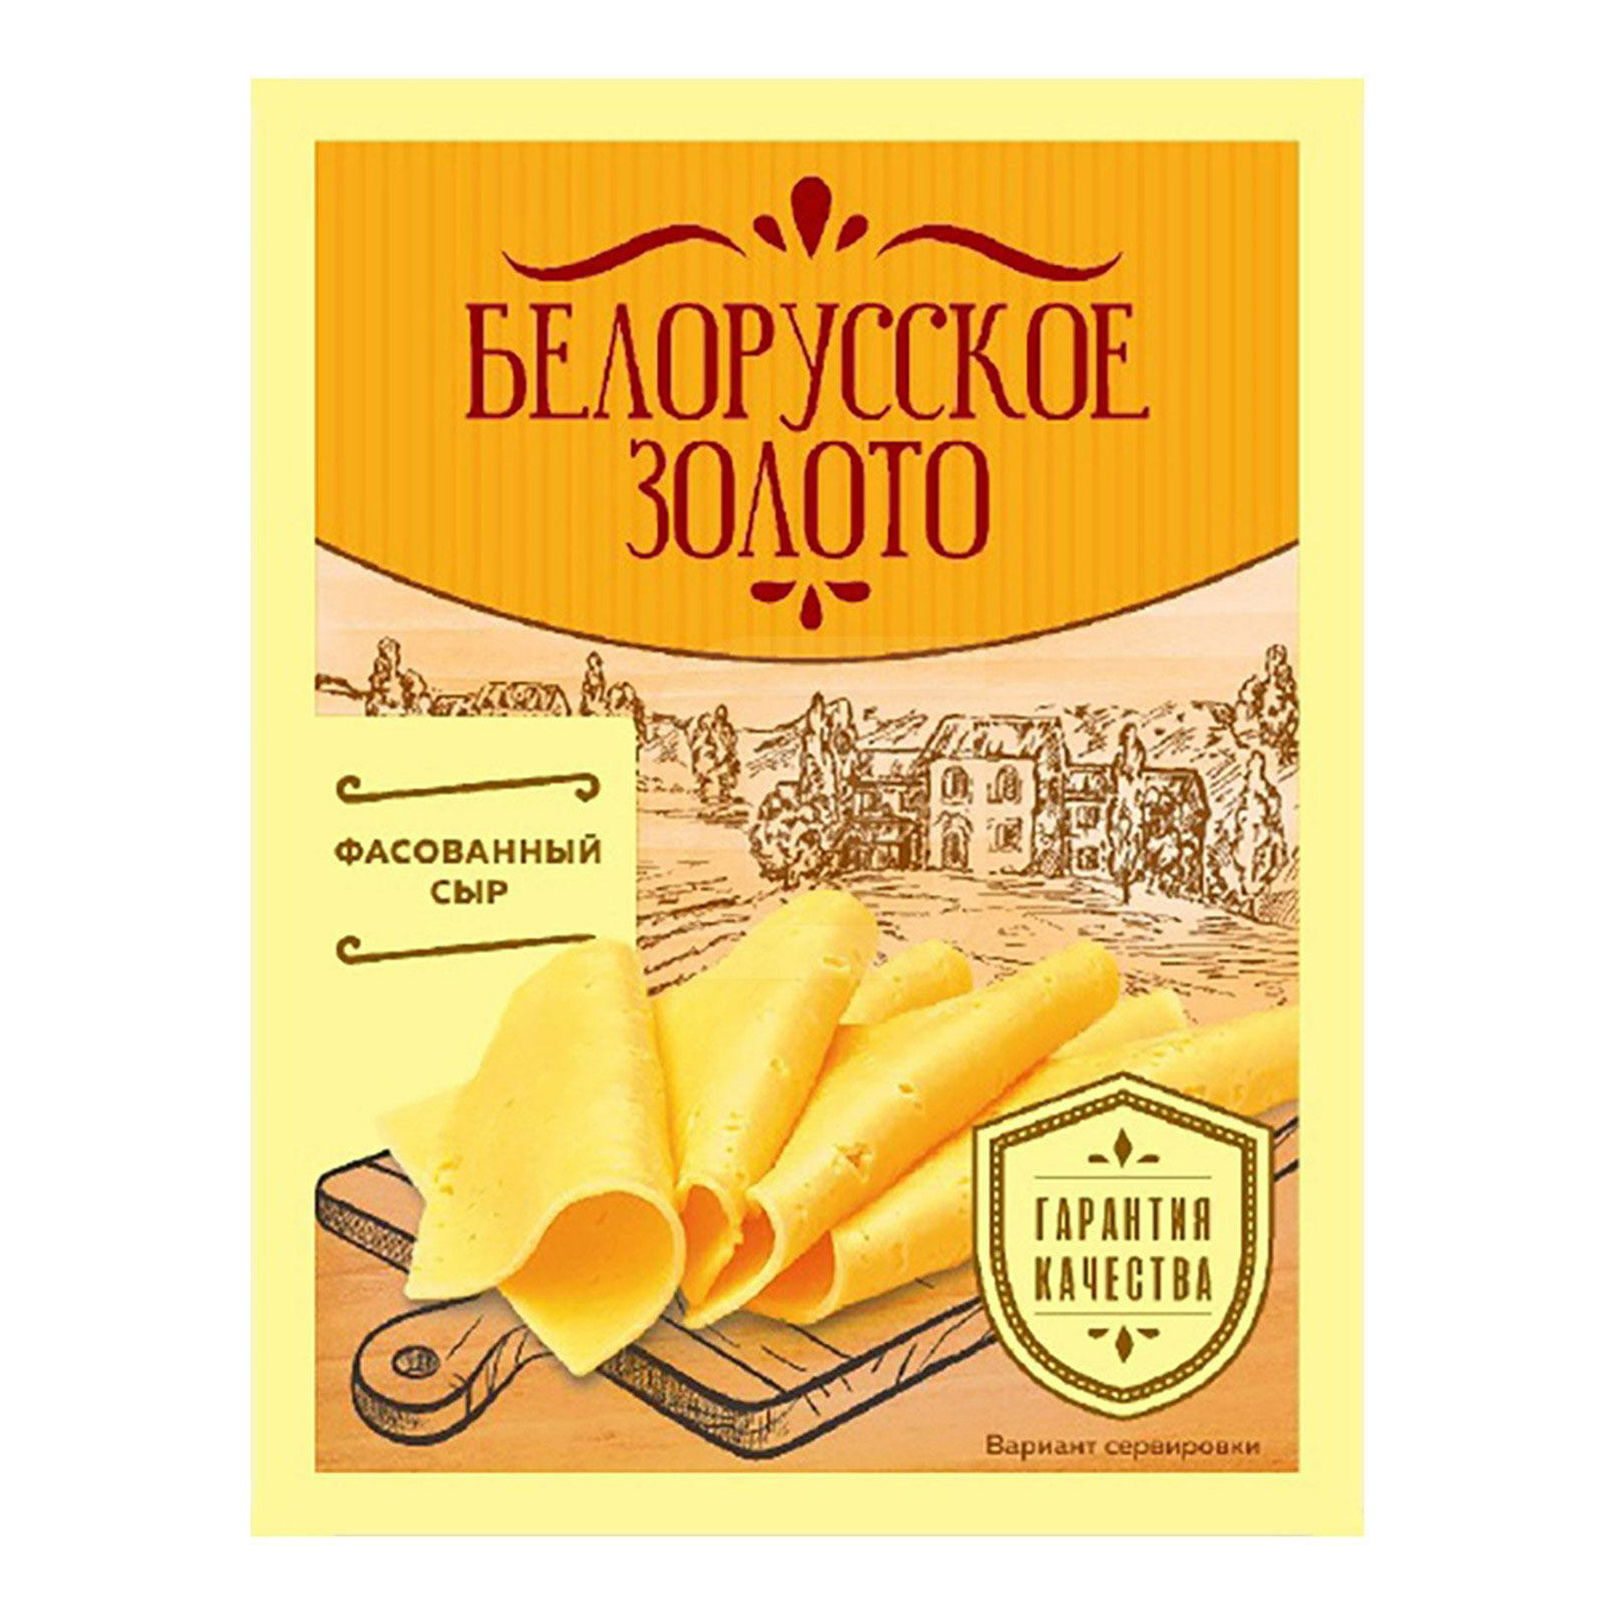 Сыр Белорусское золото 45% 220 г БЗМЖ